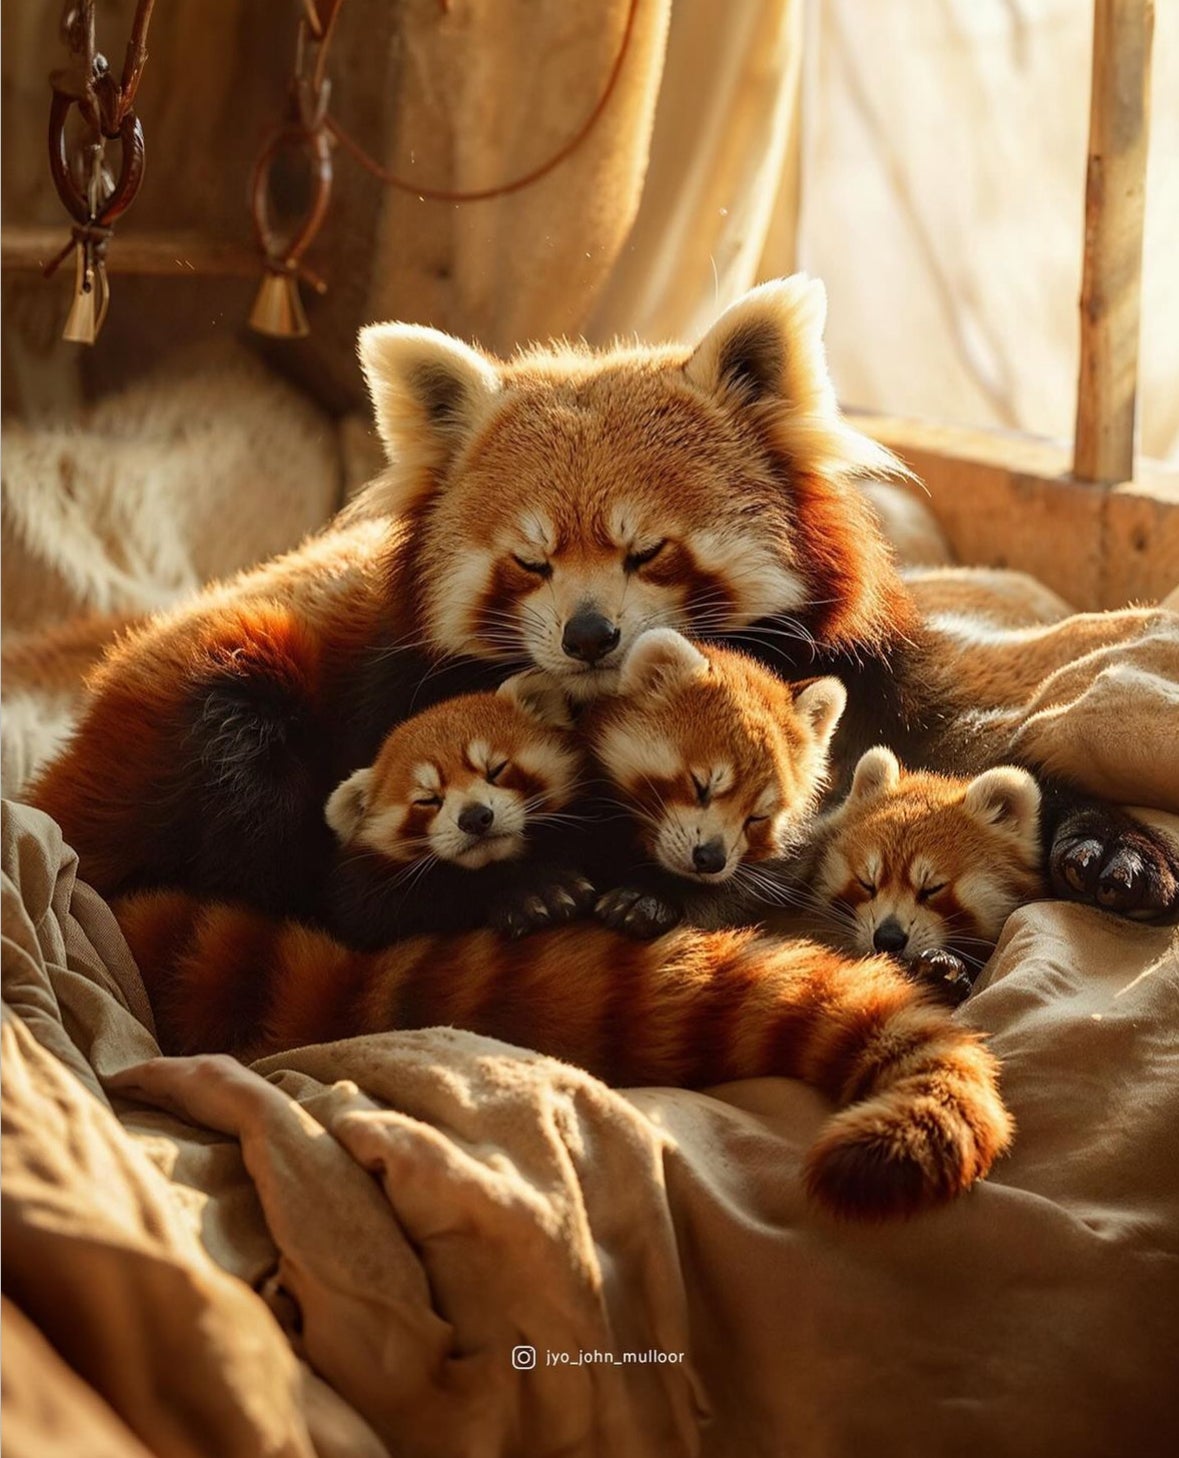 ภาพแม่ลูกสัตว์โลกน่ารักที่นอนกอดกันแน่นแบบแสนอบอุ่น aiart